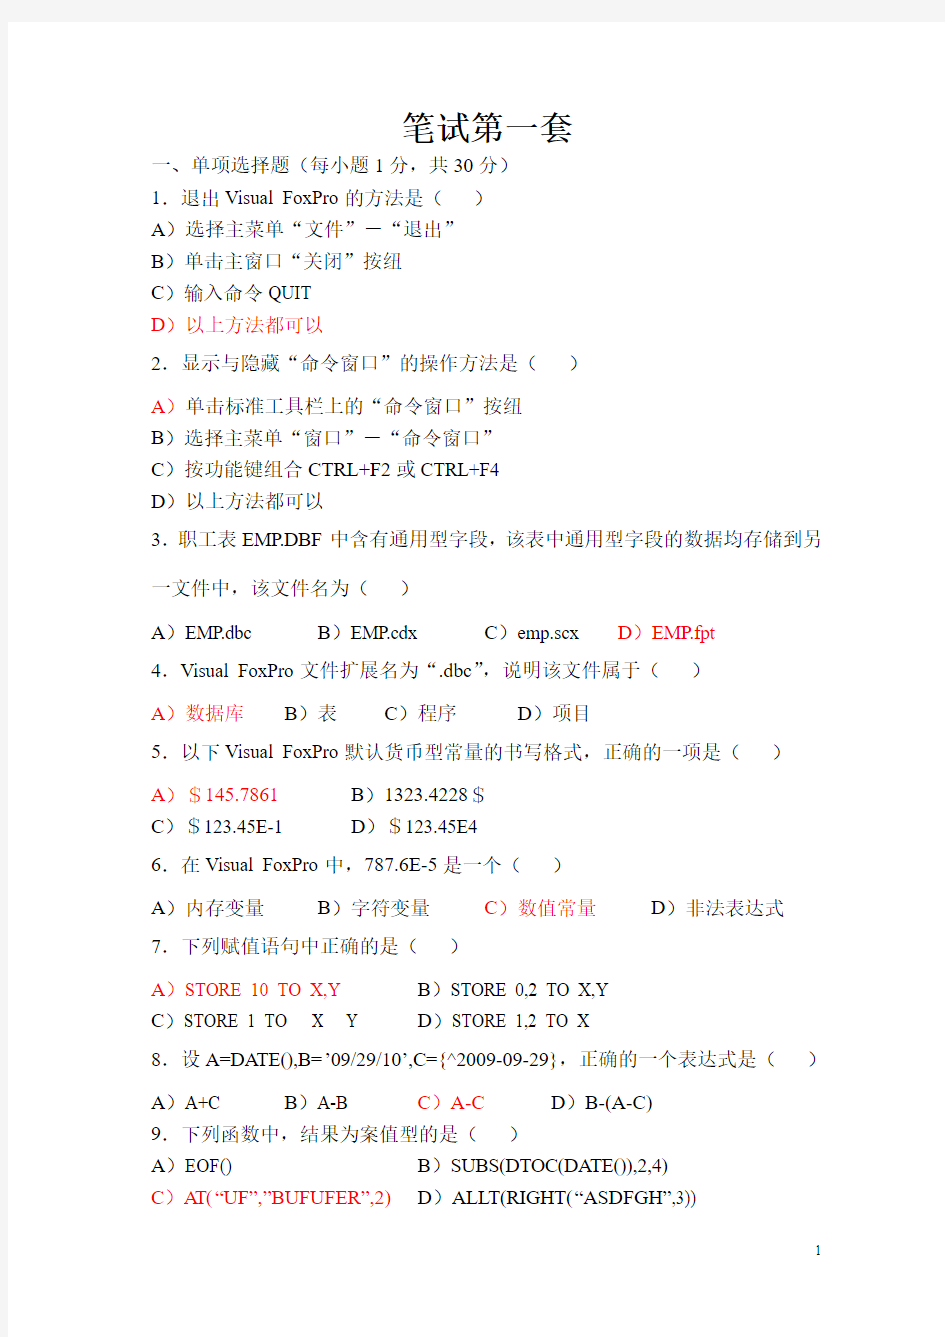 重庆2010年11月计算机等级考试VFP笔试试题及答案